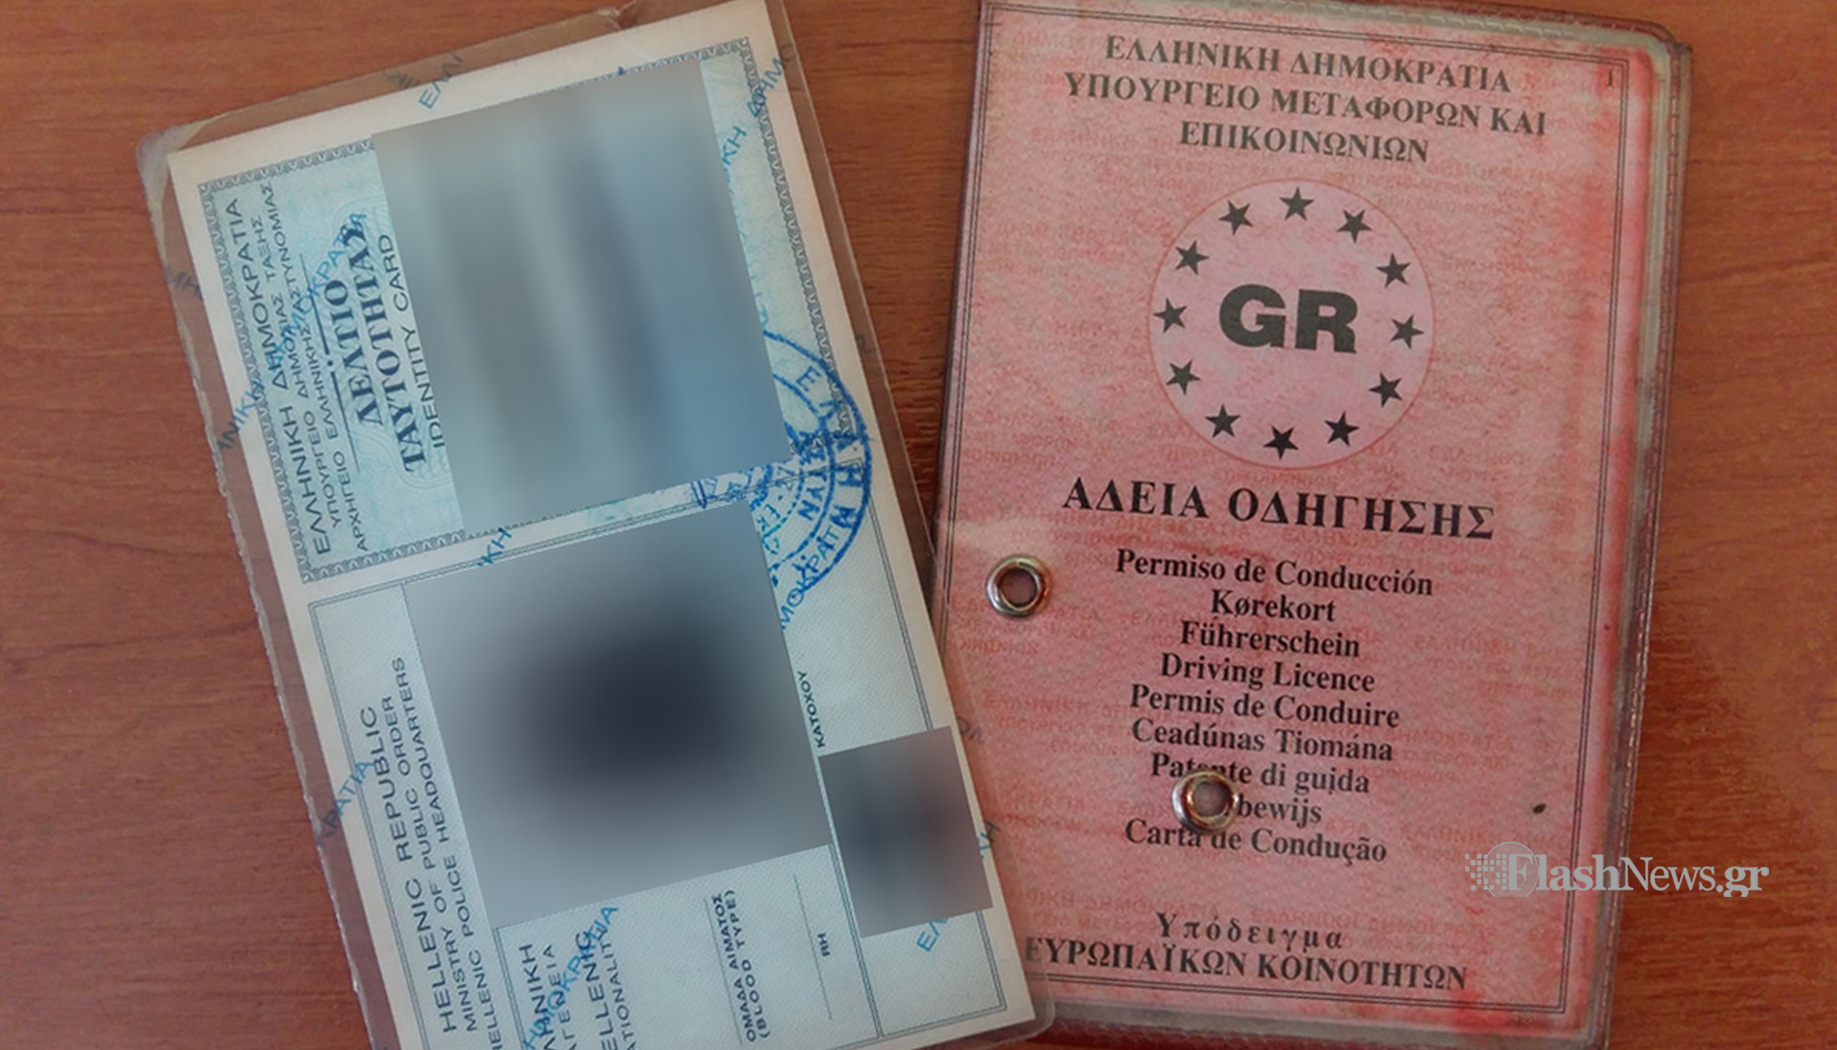 Βρέθηκε χαμένη ταυτότητα και δίπλωμα στα Χανιά – Αναζητείται ο κάτοχος